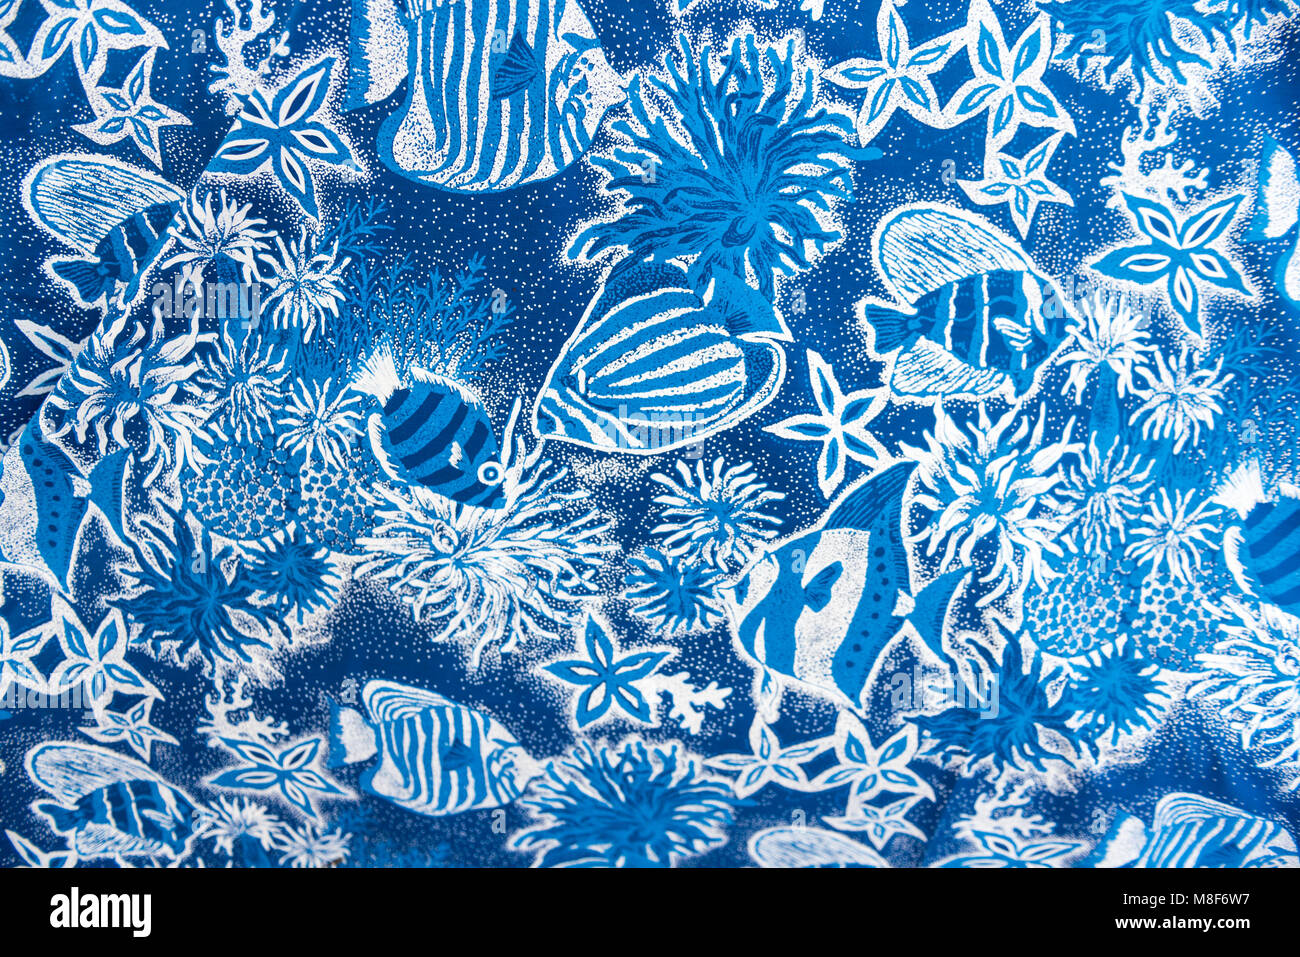 Blue Hawaiian tissu avec des anémones et poissons Banque D'Images